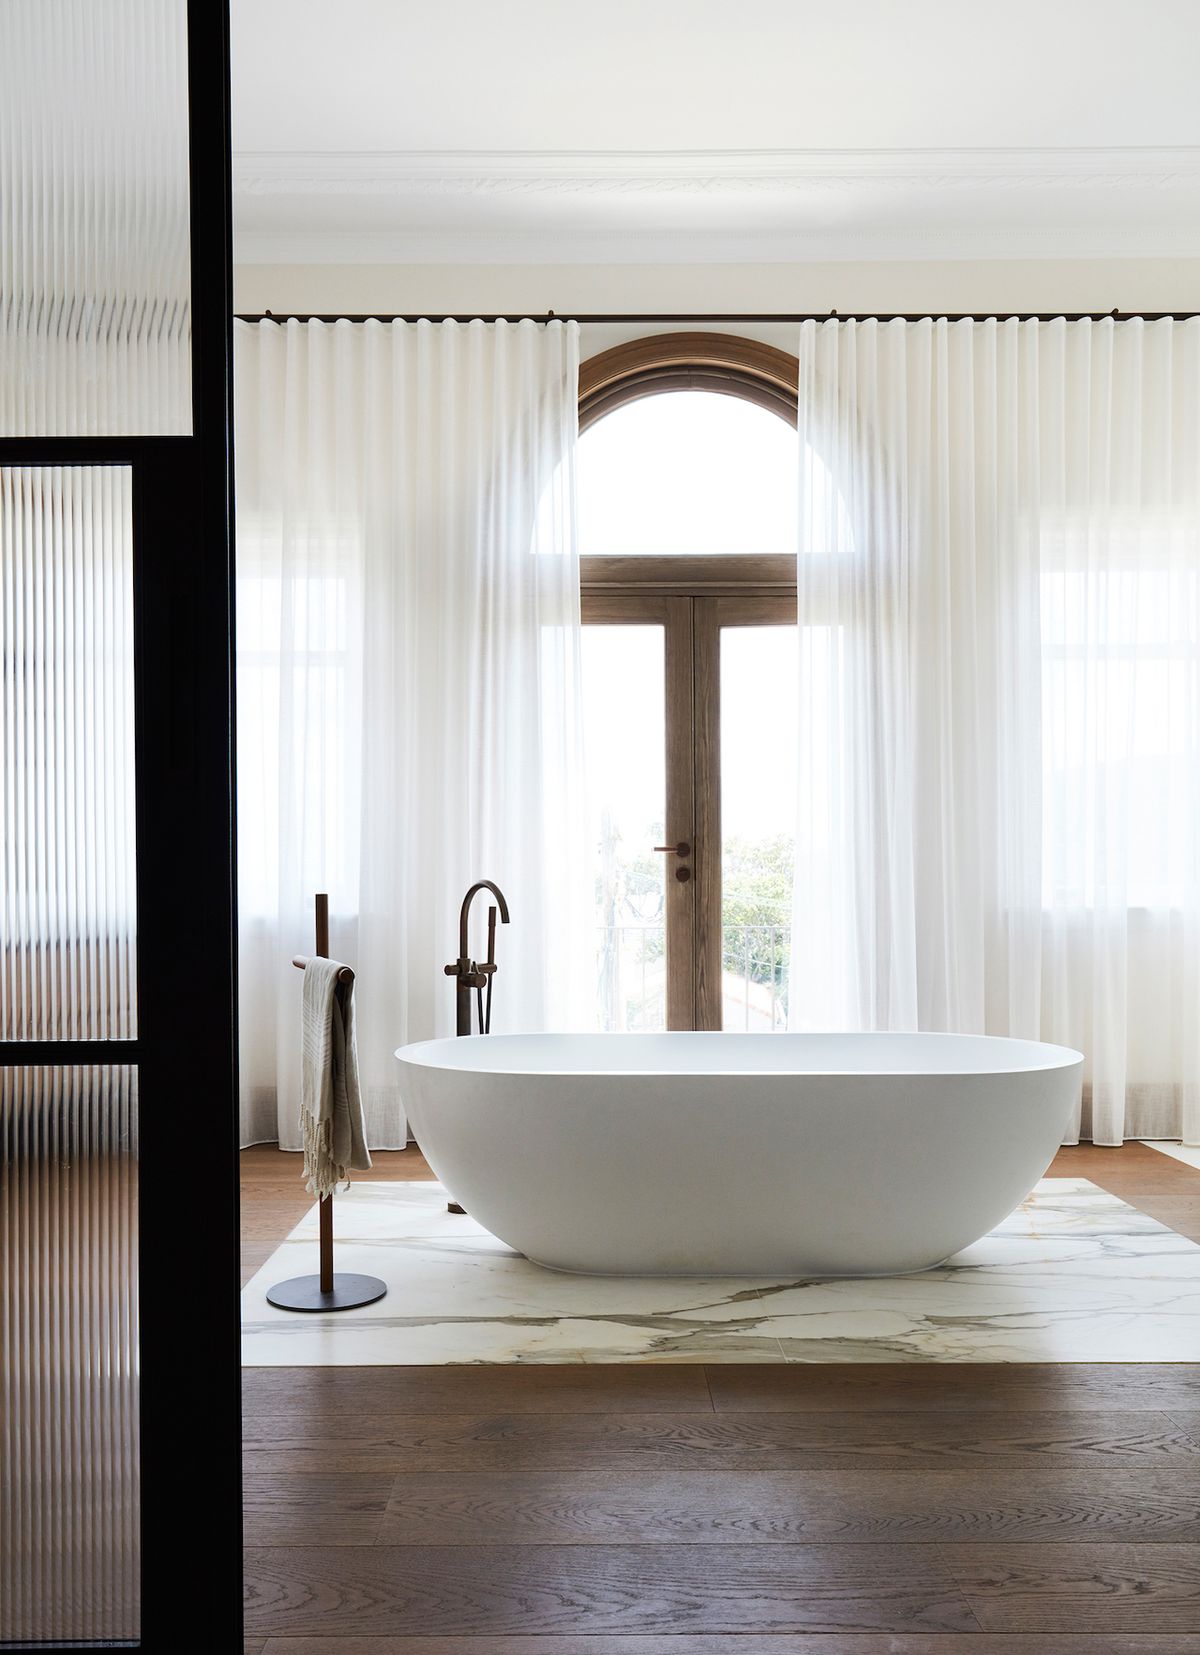 Intimní atmosféru koupelny u hlavní ložnice podporují dlouhé bílé závěsy, eleganci jako připomínku starých časů pak mosazná podlahová baterie vedle solitérní vany.